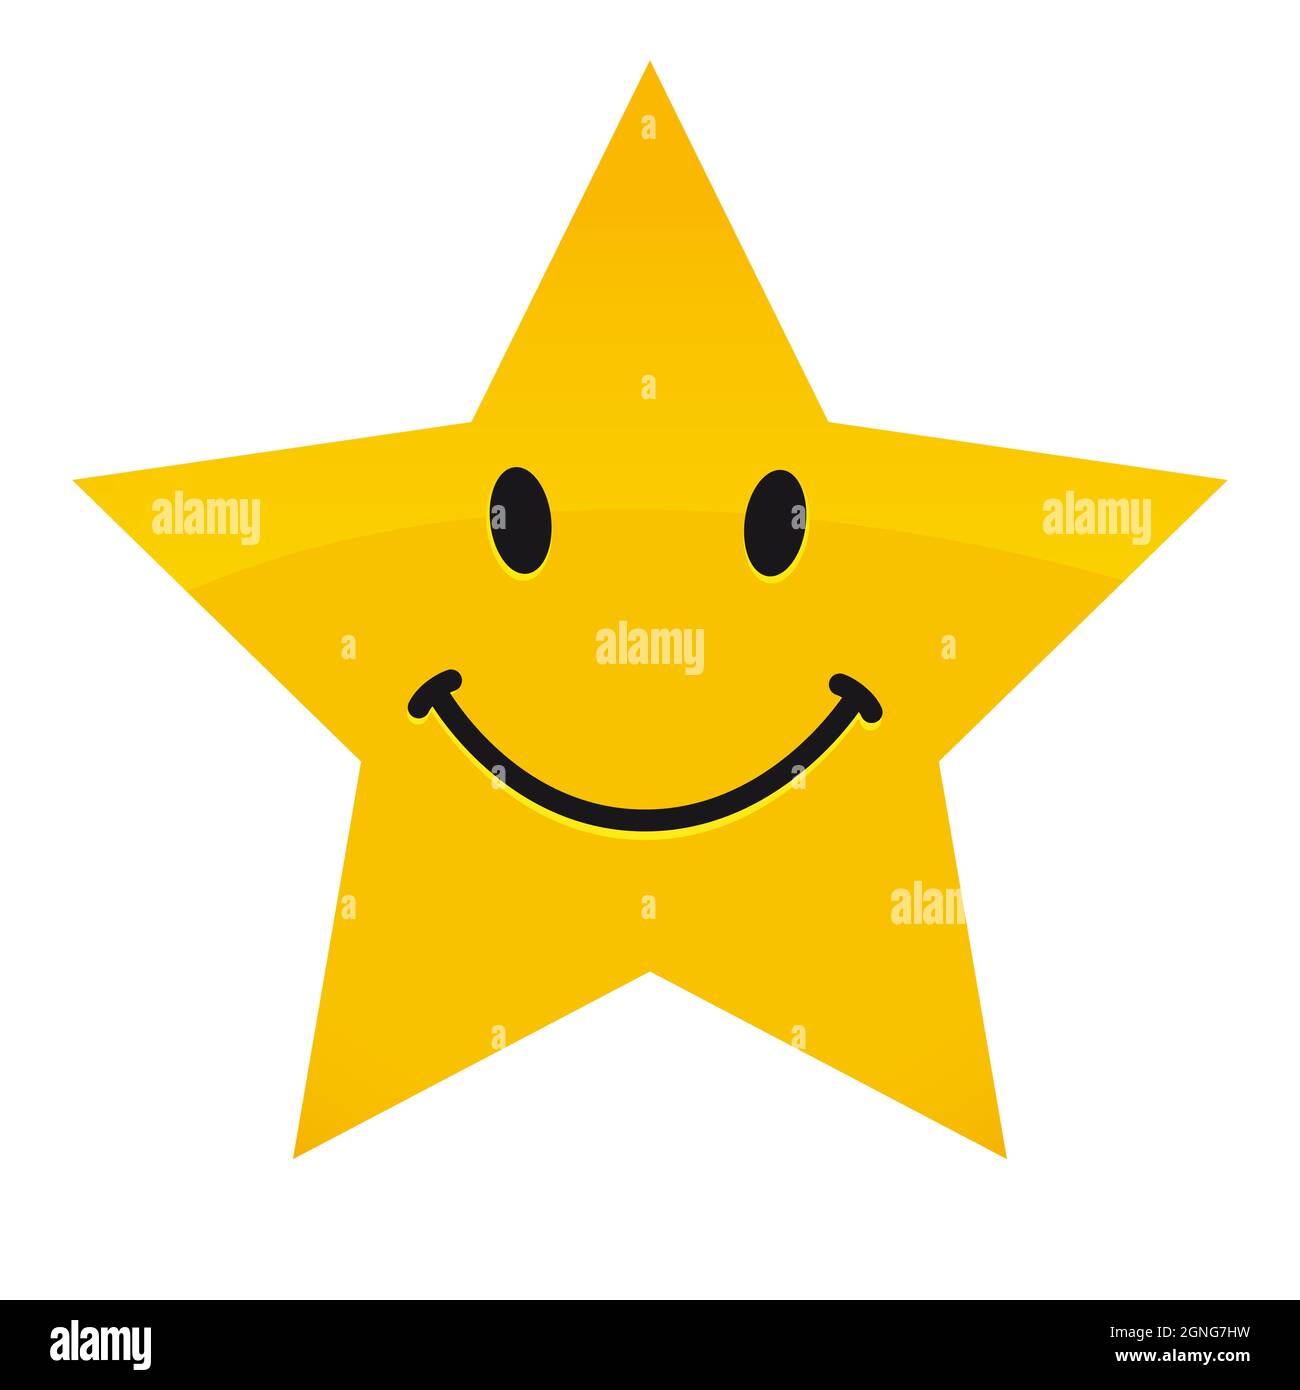 Icône de sourire créative, forme d'étoile de fête. Logo vecteur émoticône souriant. Happy World Smile Day, Happy Emoji Day congrats. Desi graphique abstrait isolé Illustration de Vecteur